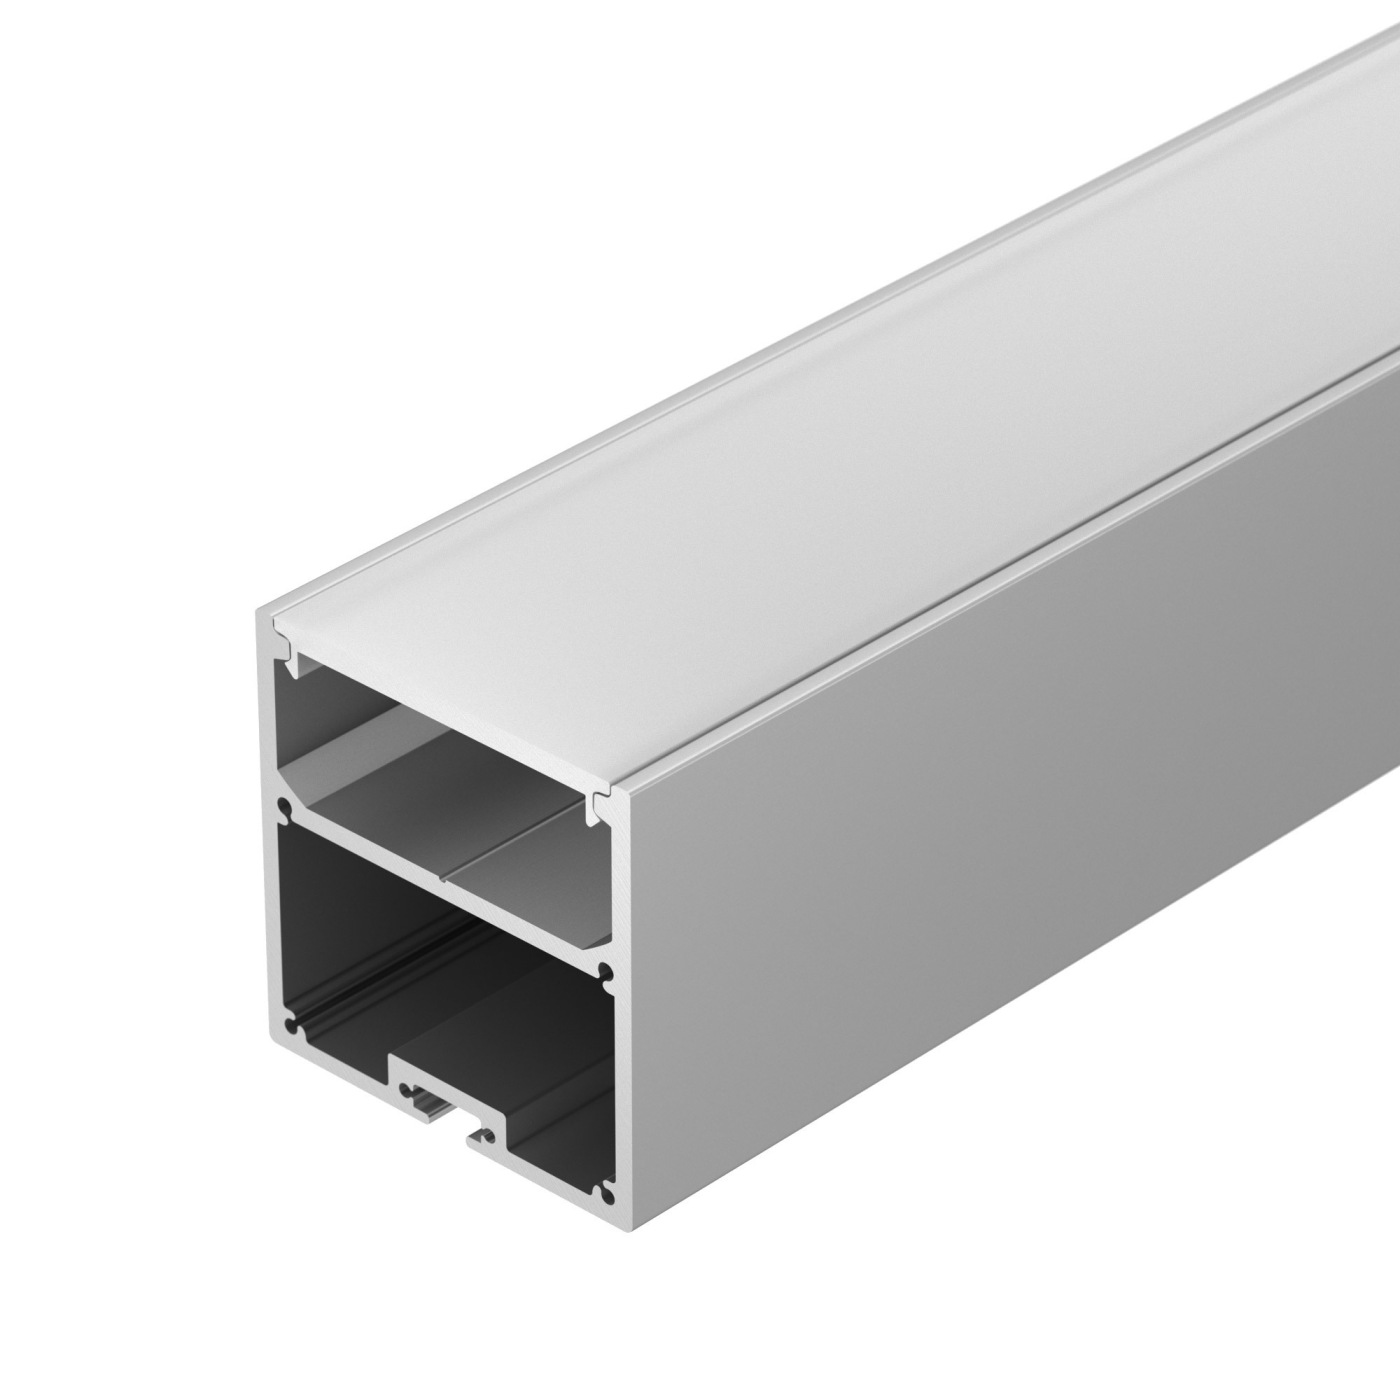 Профиль с экраном SL-LINE-5050-2500 ANOD+OPAL профиль алюминиевый накладной подвесной с отсеком для бп серебро cab266